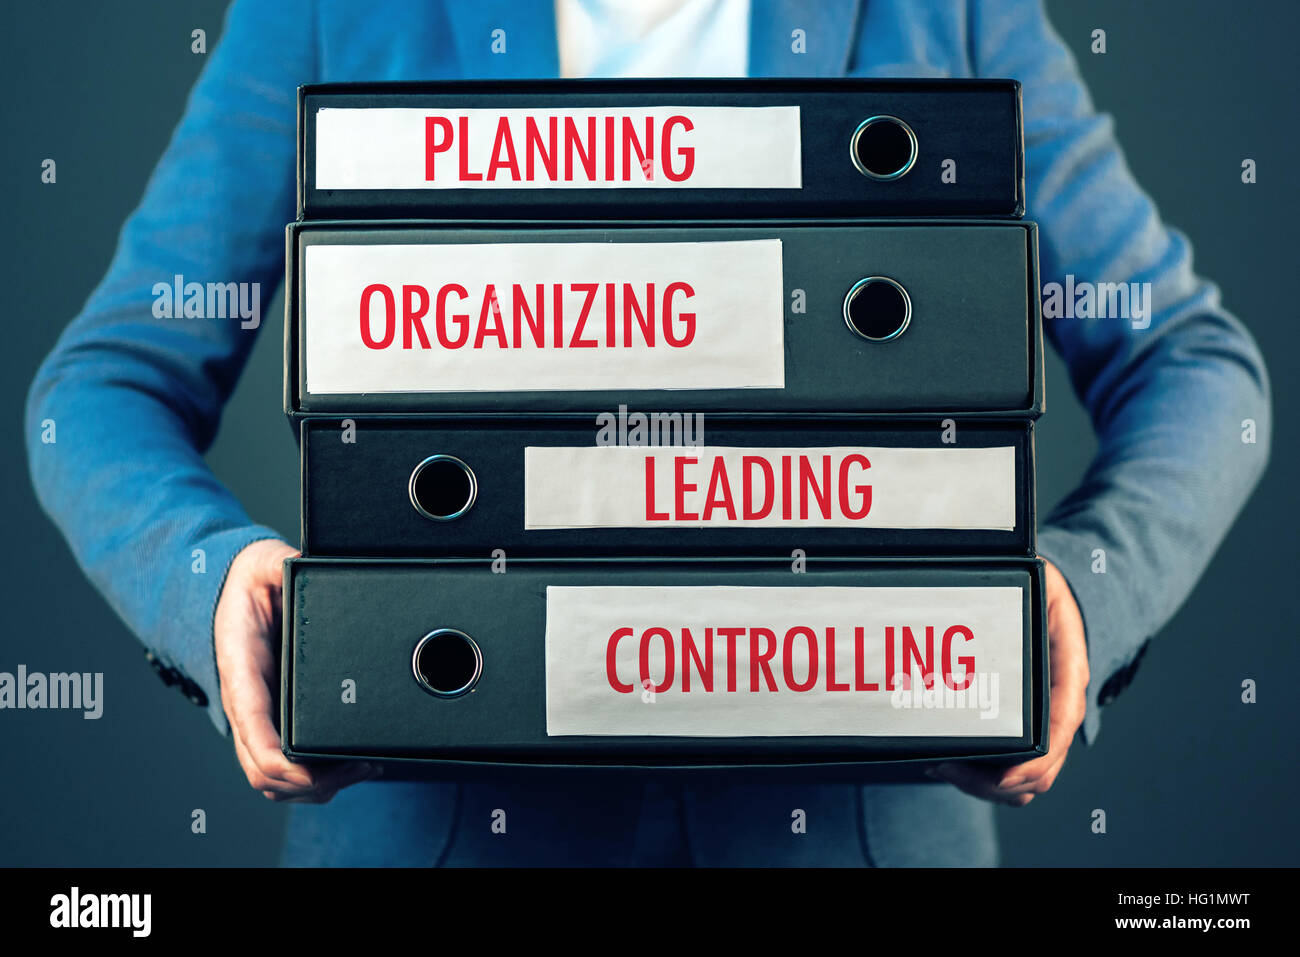 Cuatro funciones básicas del proceso de gestión en la organización de la empresa: planificar, organizar, dirigir y controlar. Foto de stock